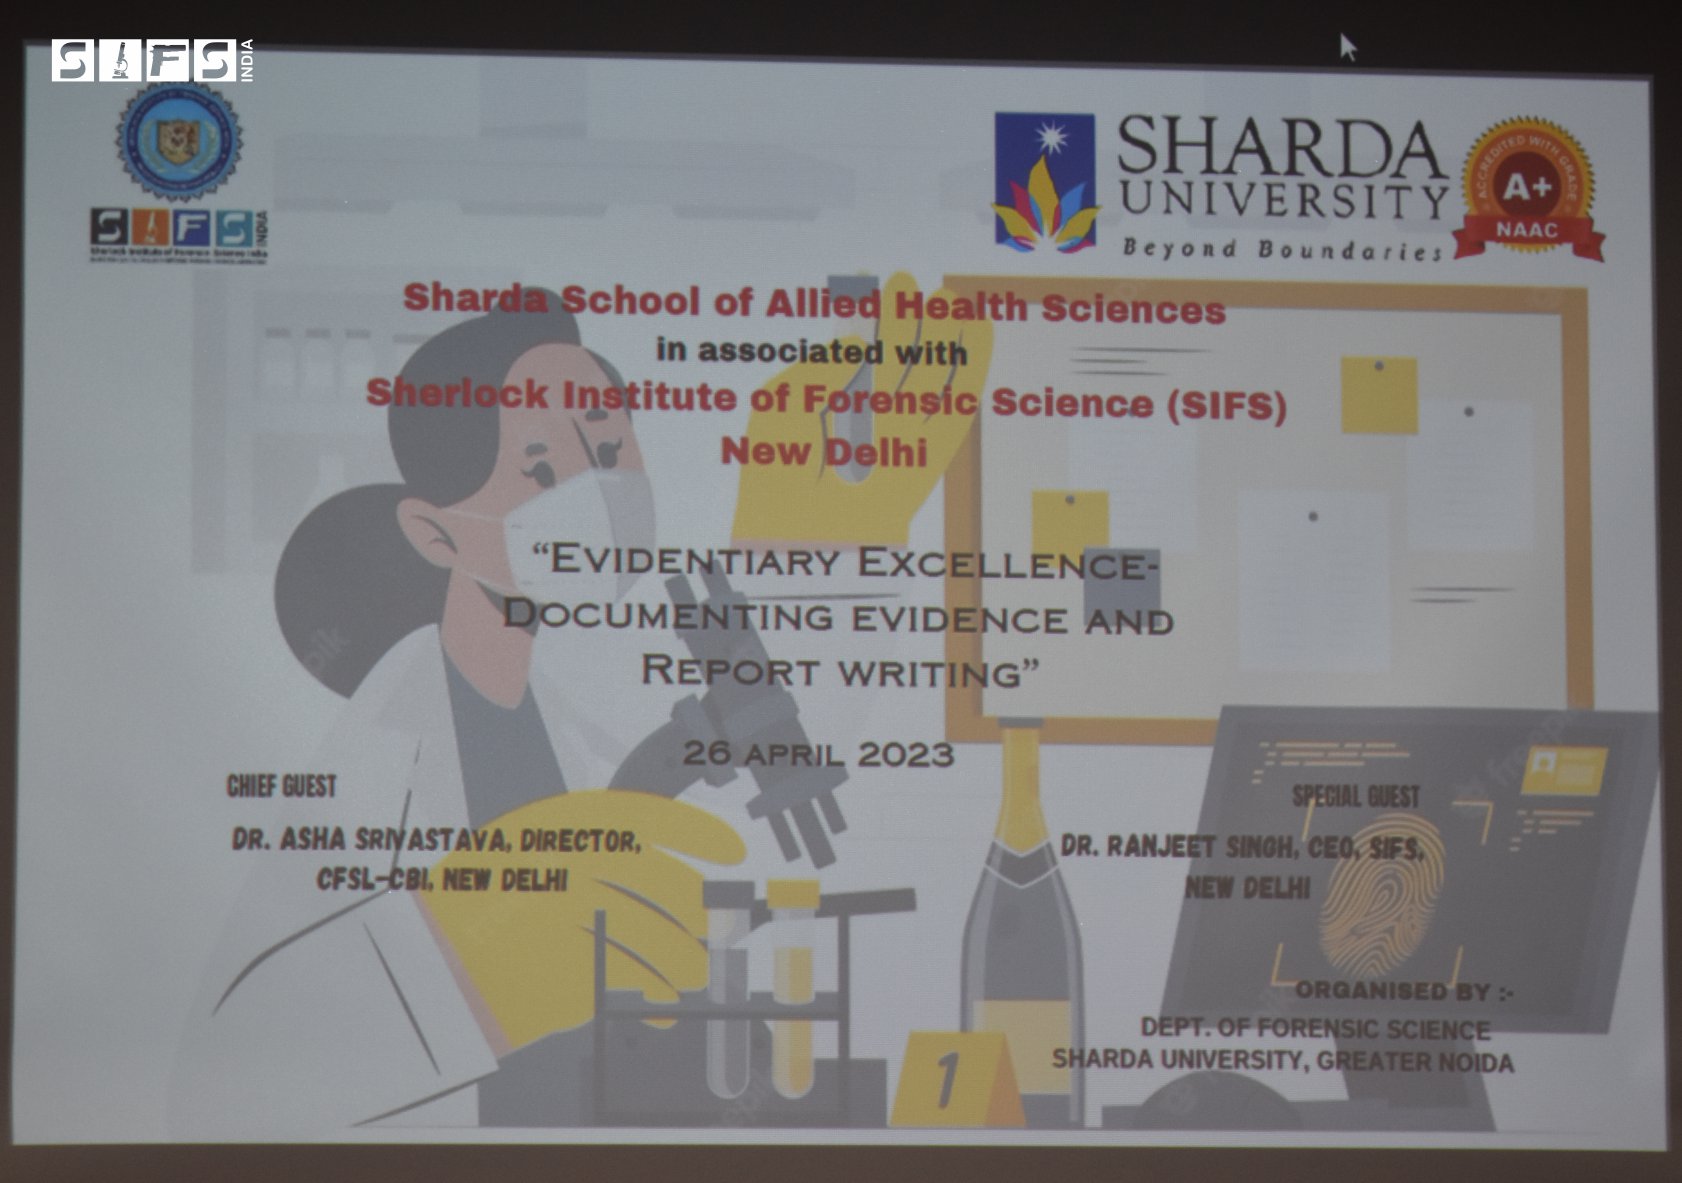 MoU signing ceremony with Sharda University, India